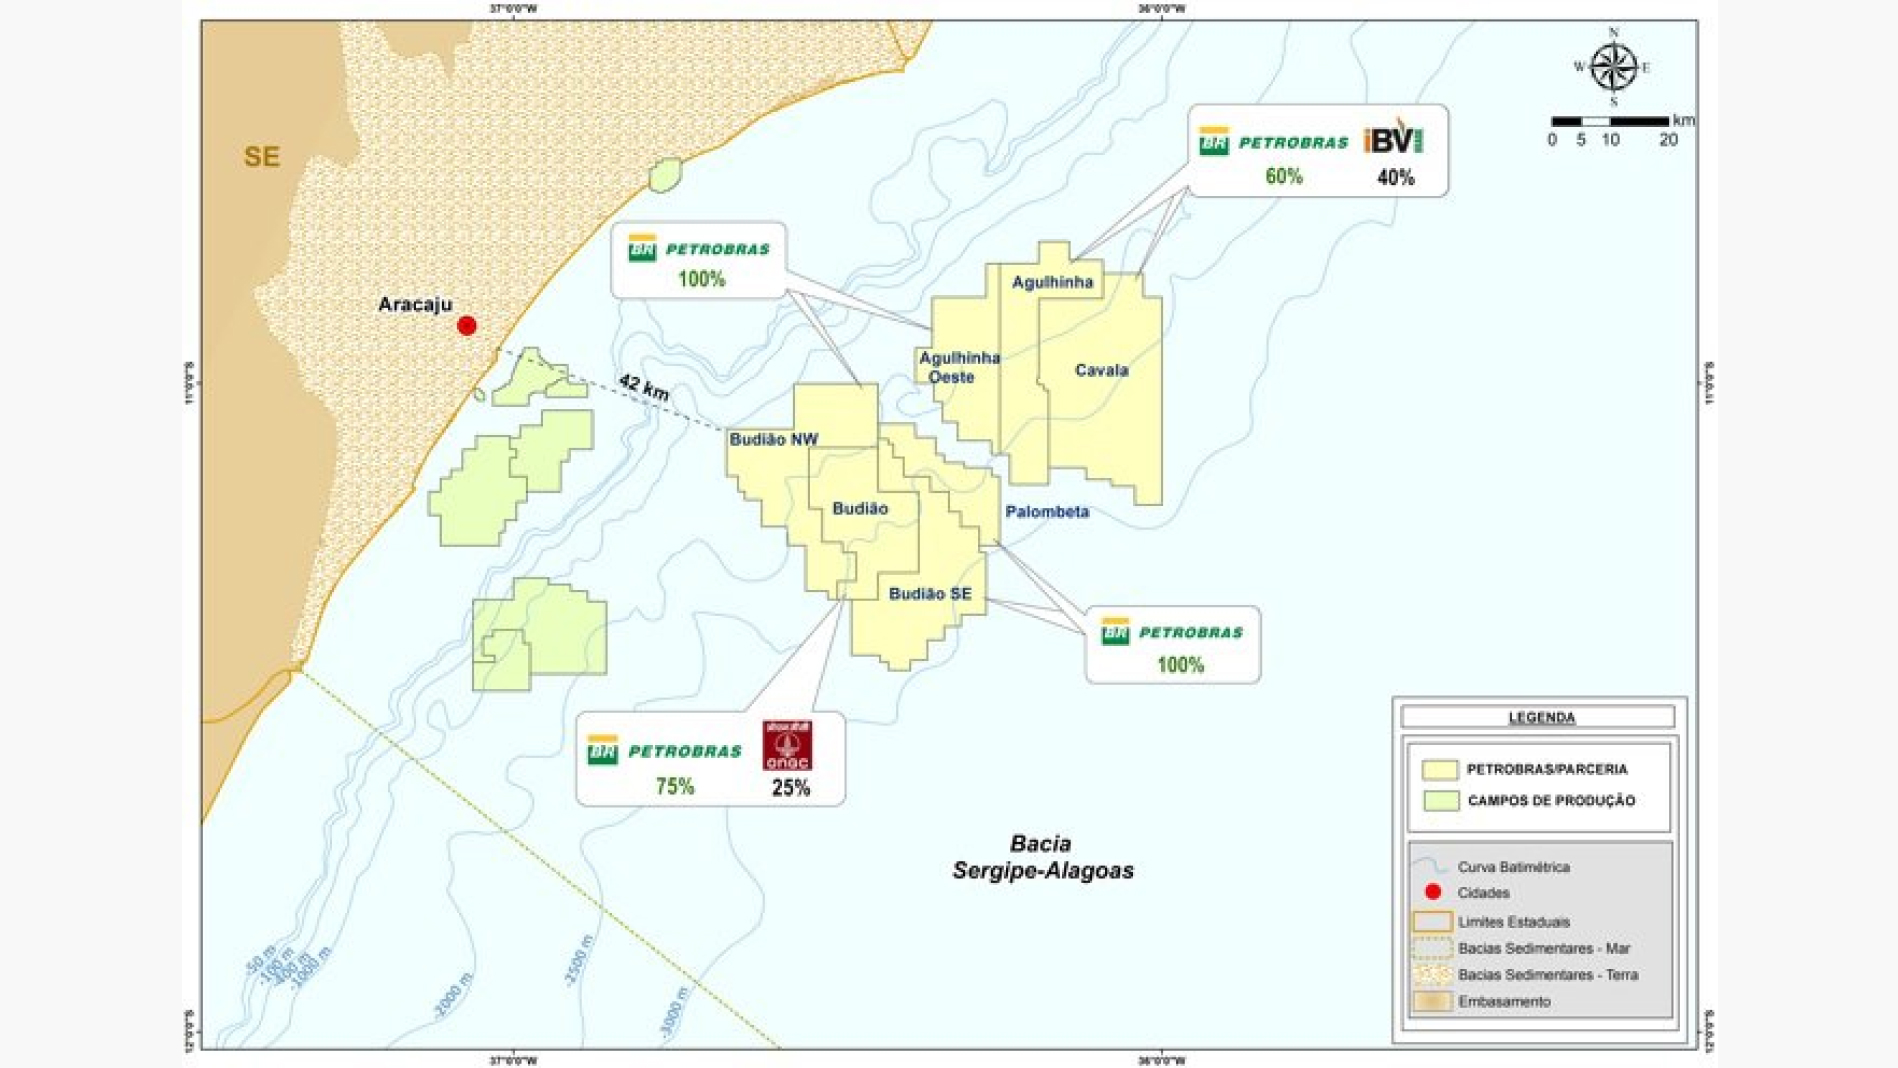 Ilustração mostrando localização da Bacia Sergipe-Alagoas e todos os seus sete campos de petróleo.